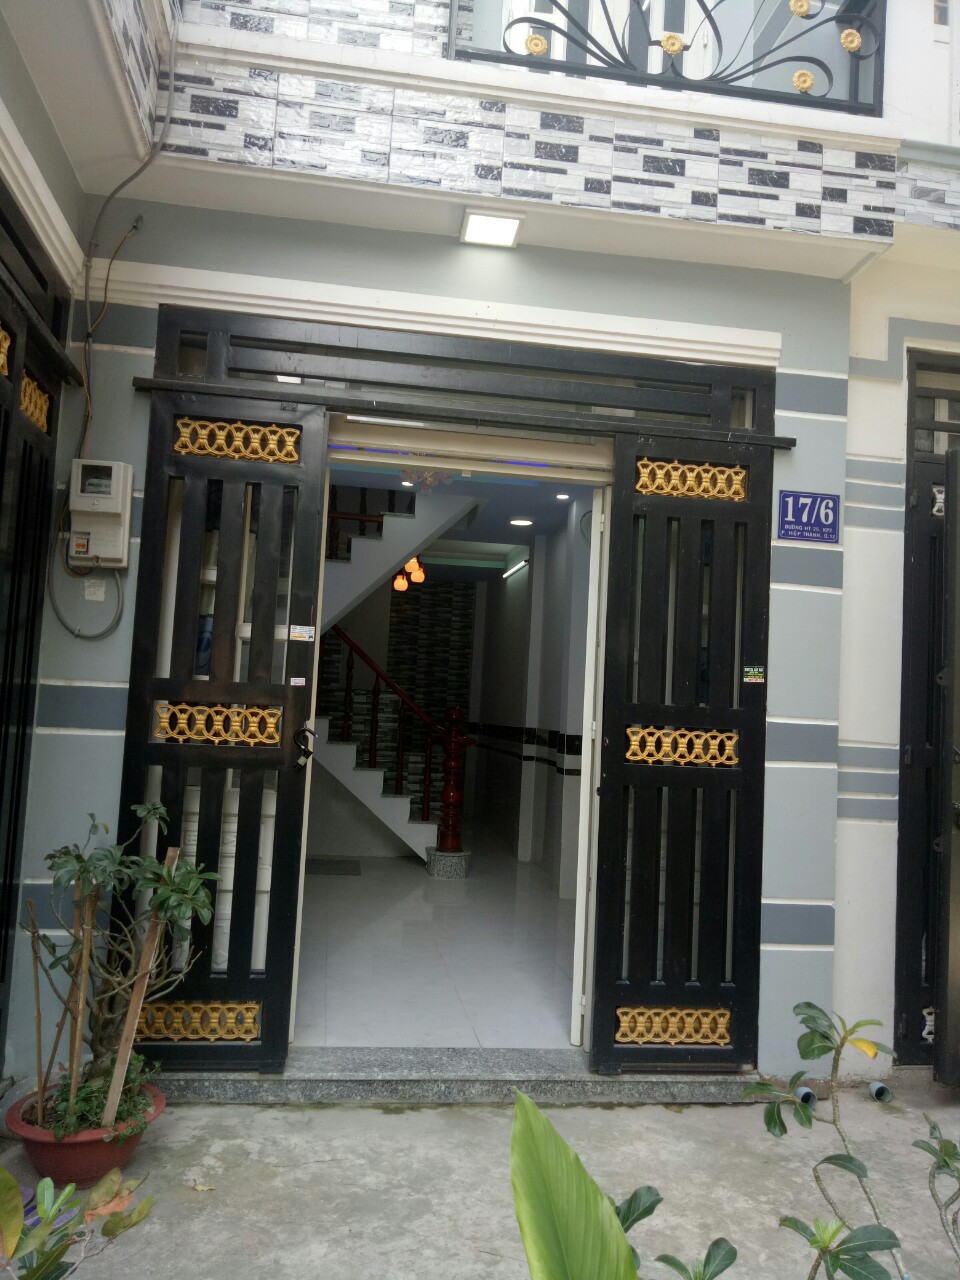 Cần bán gấp 01 căn nhà 90m2 1Trệt 2 lầu đường Nguyễn Ảnh Thủ, giá 1,78tỷ, sổ hồng, nhận nhà ngay.